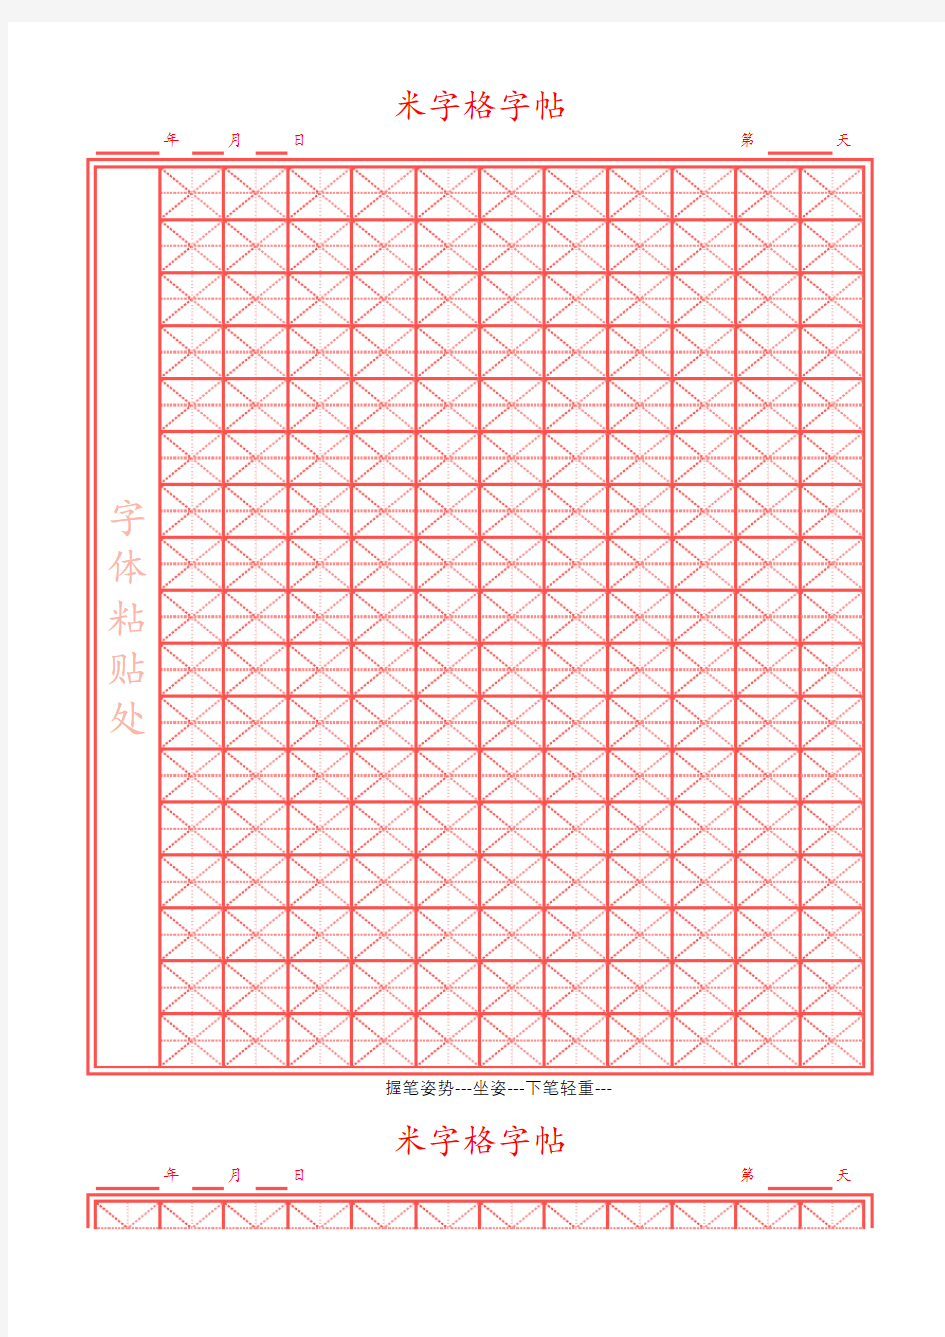 米字格硬笔楷书临摹字帖4款模板(红色边框,可打印,编辑)